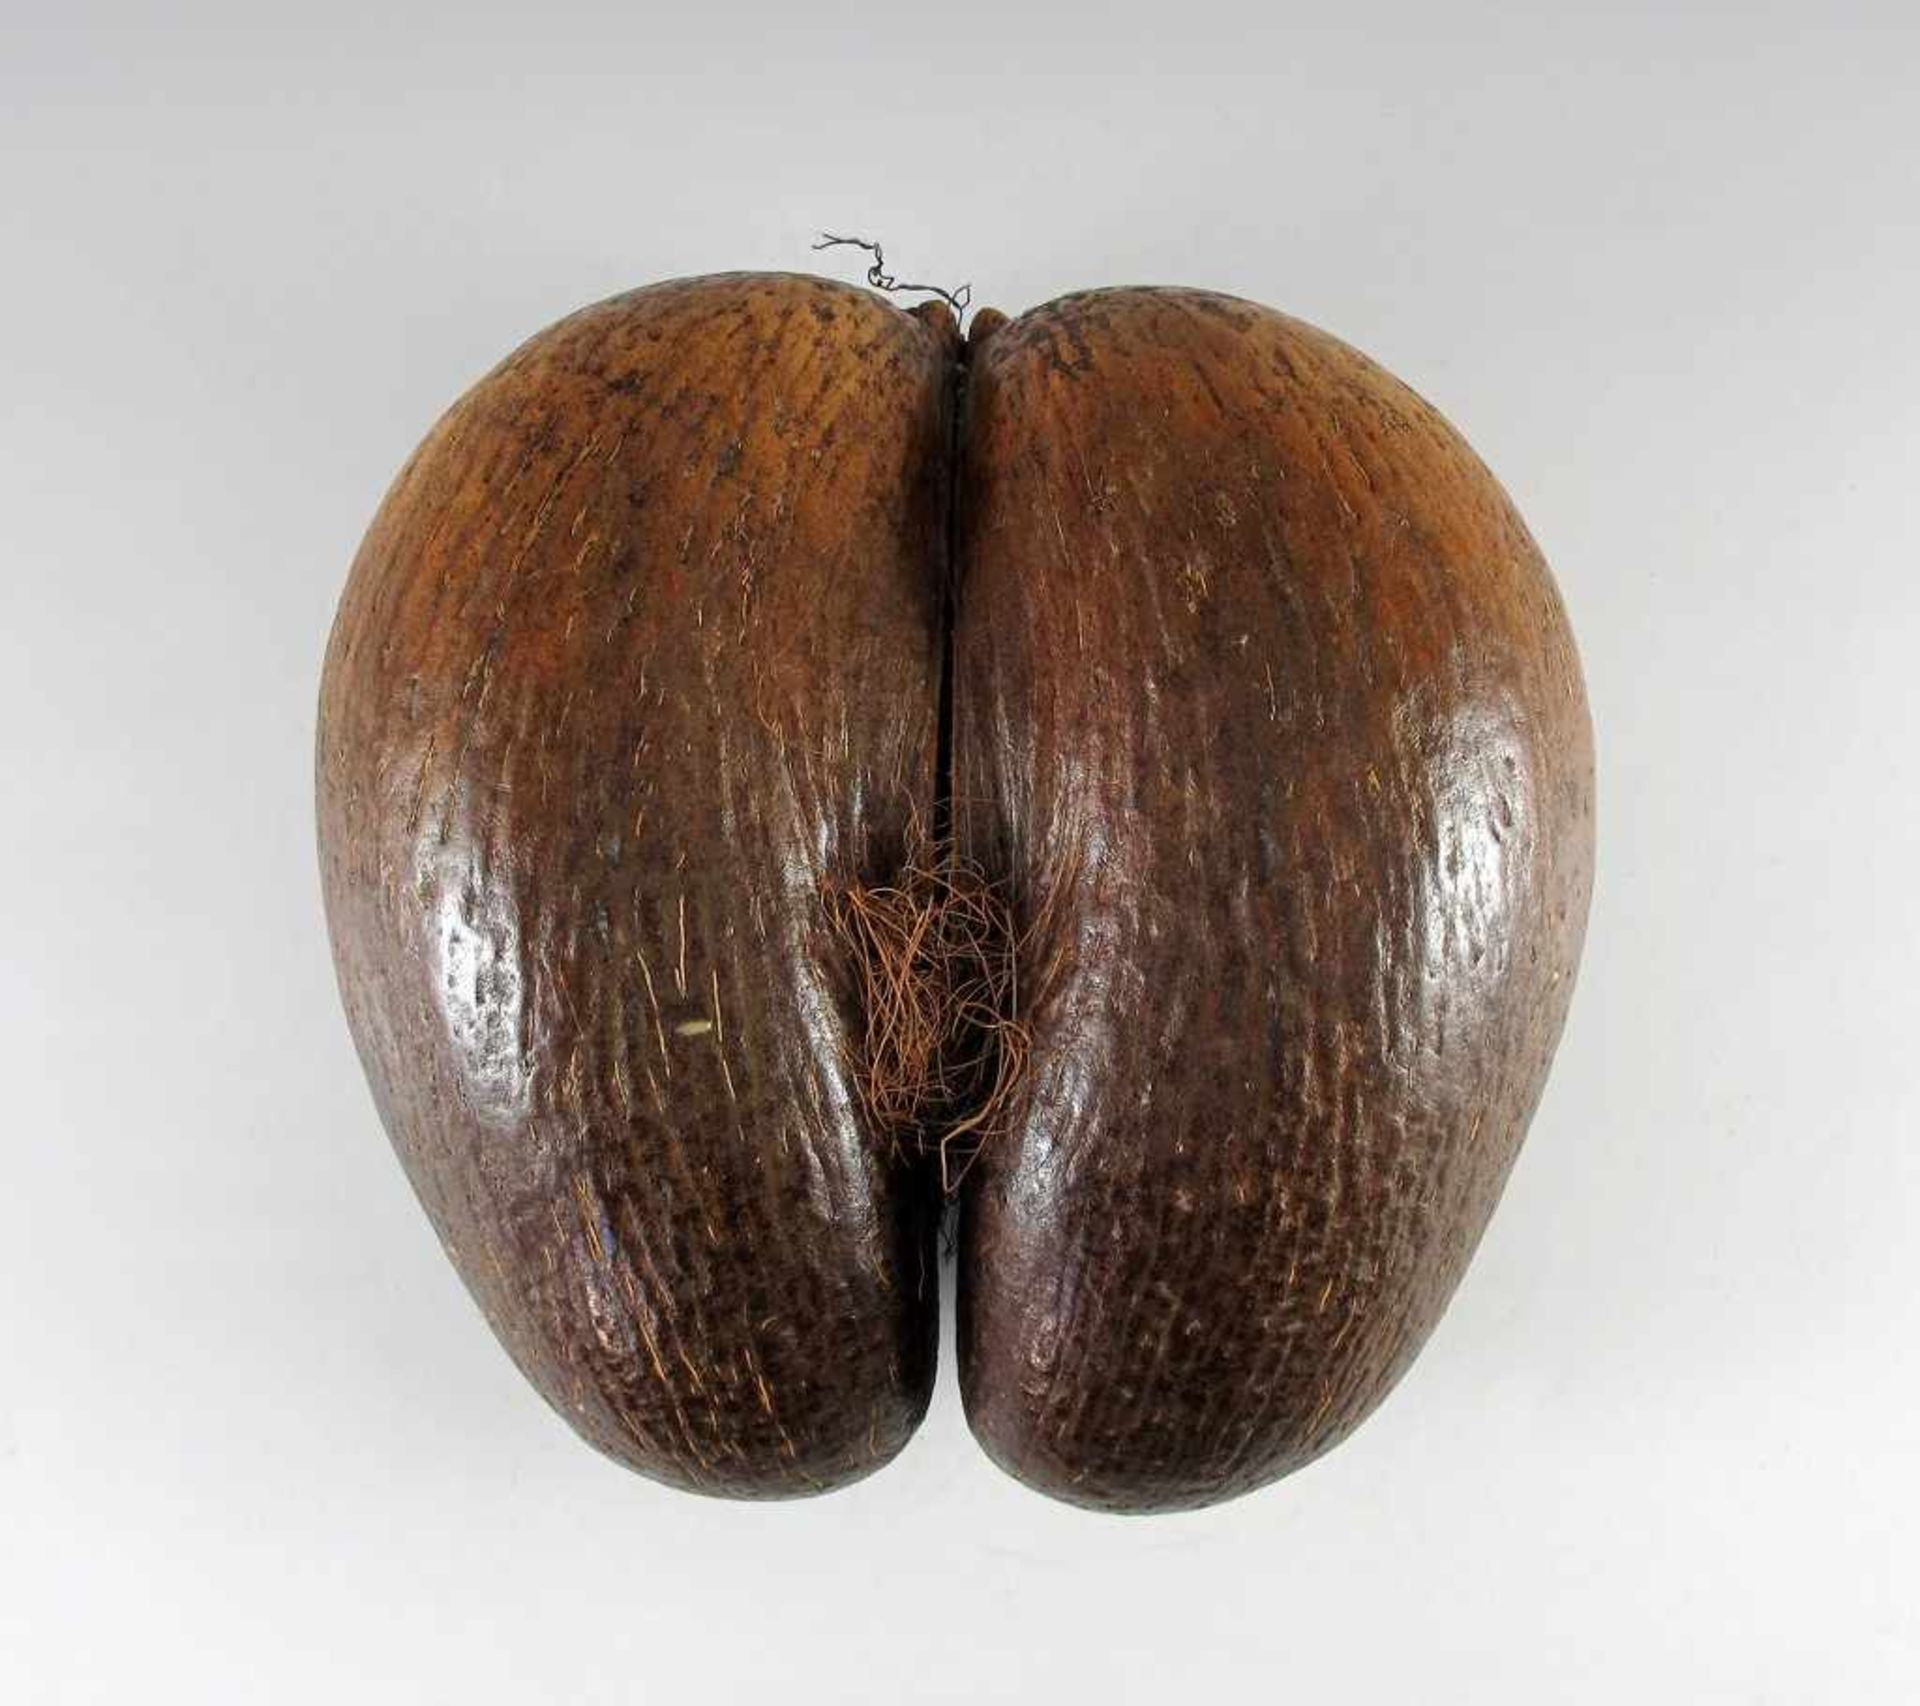 Coco de Mer (Seychellen-Nuss). L 28 cm